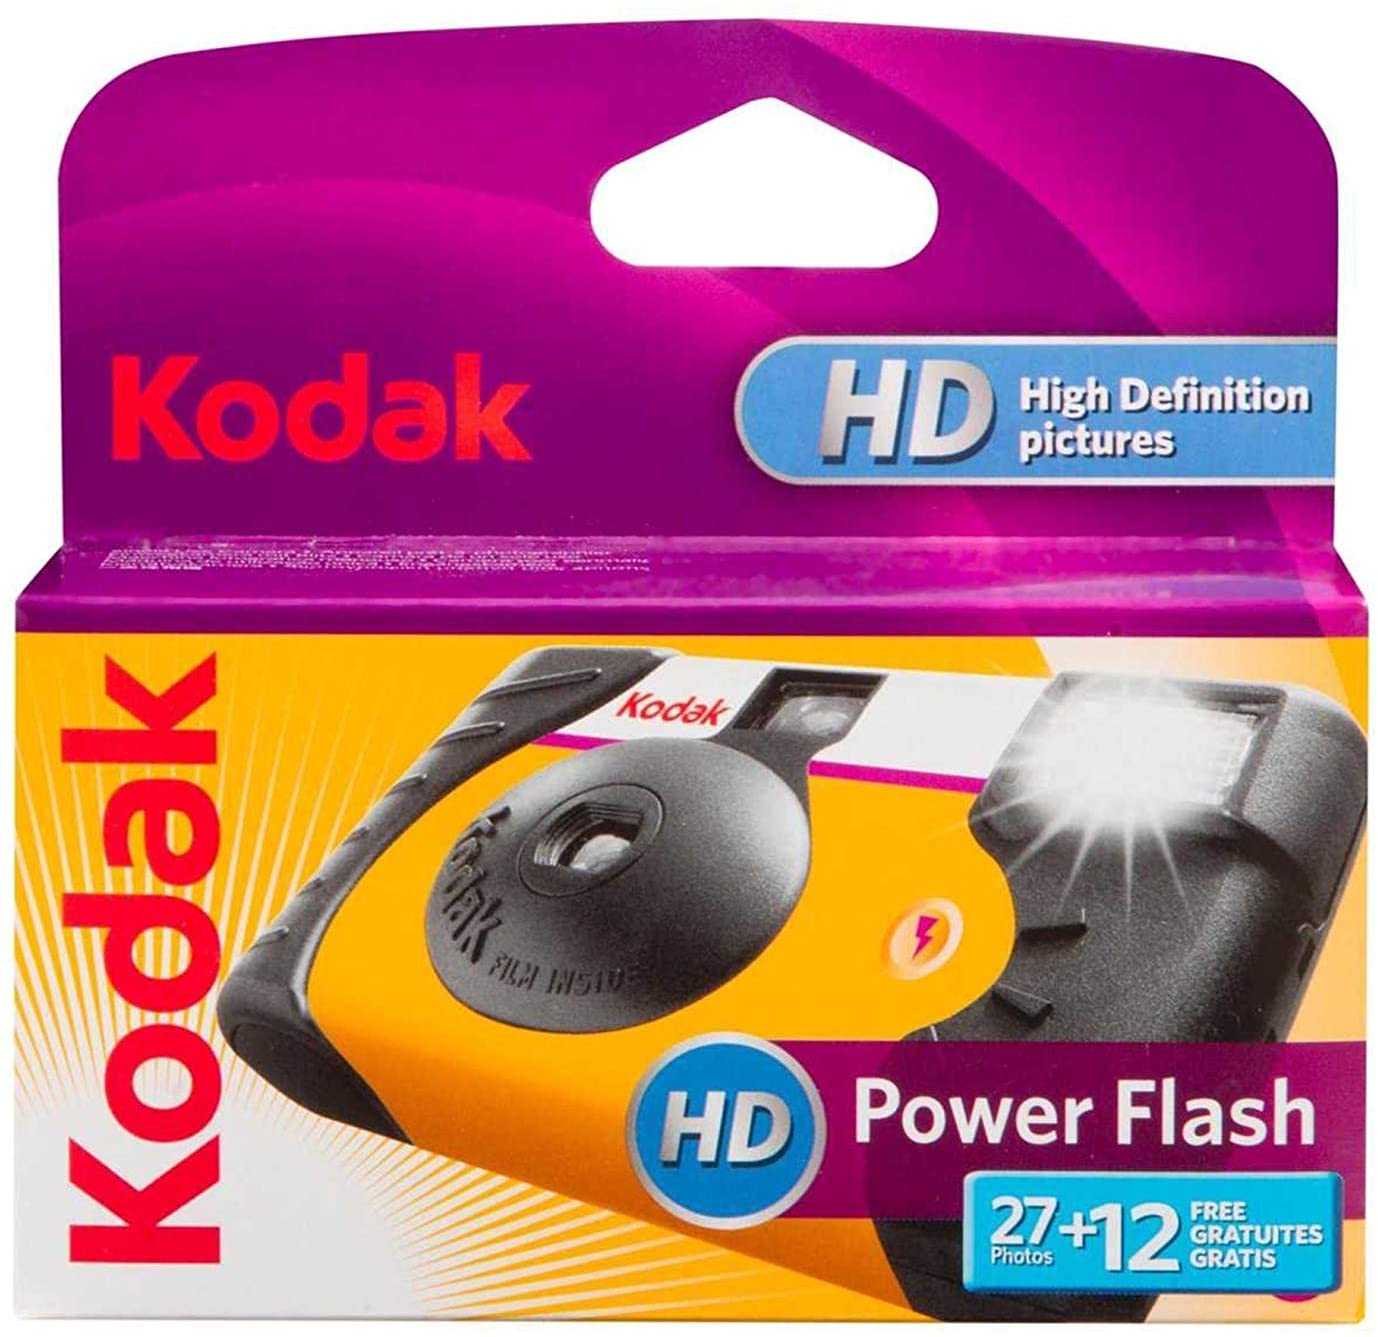 Kodak Power Flash Single Use Camera (£17.50 incl VAT)